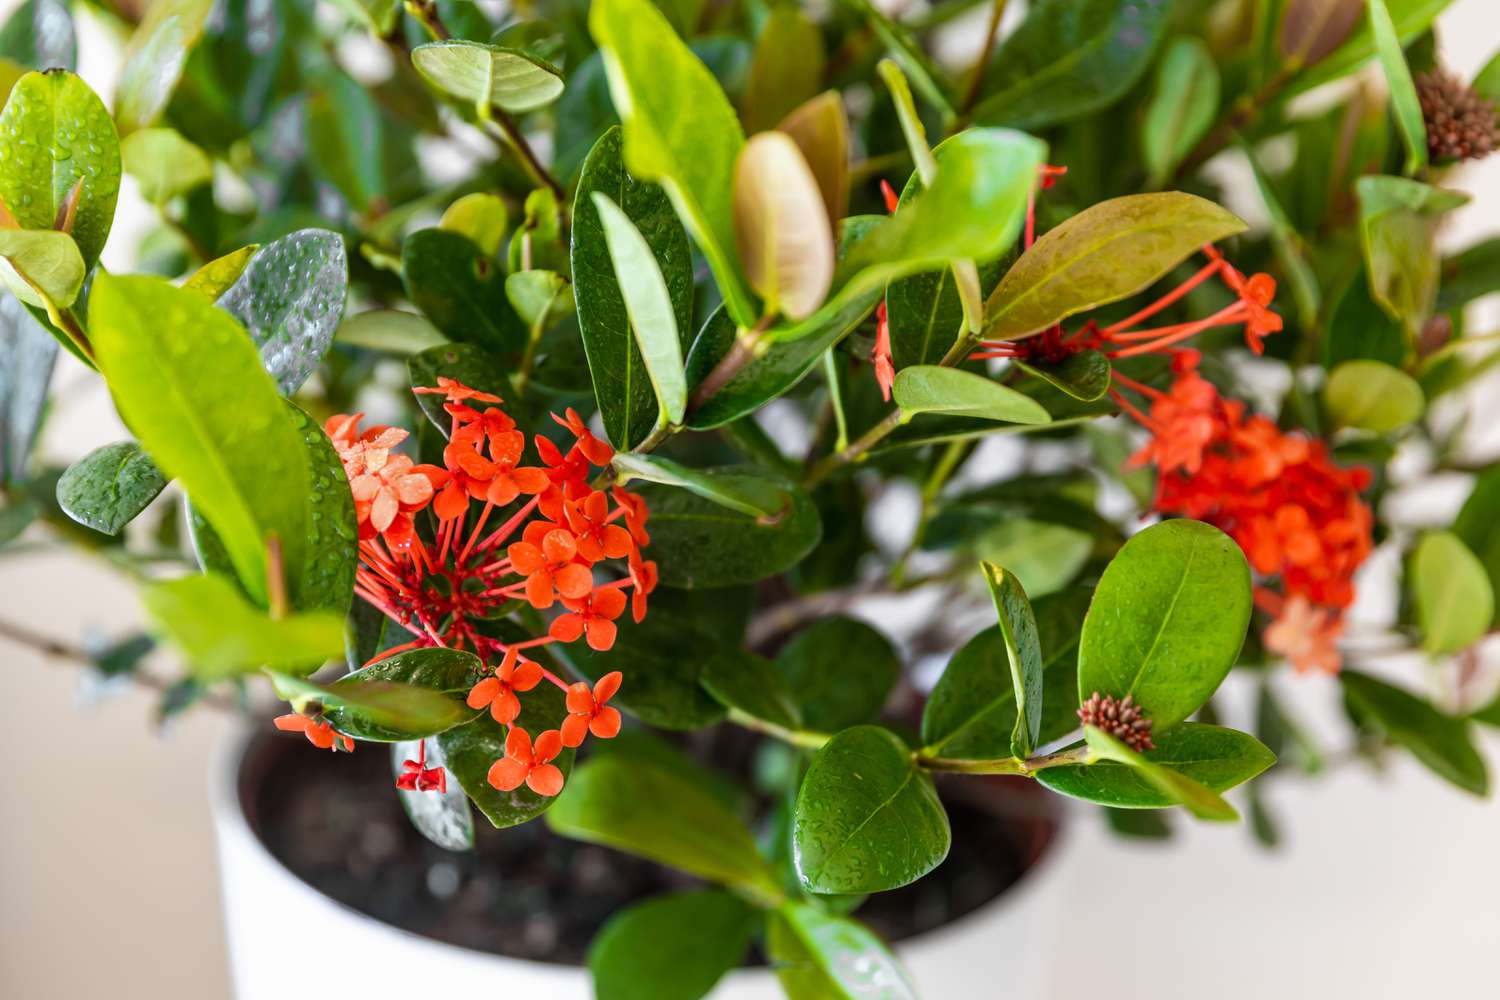 Ixora-Pflanze im Topf mit roten Blüten und Knospen in Nahaufnahme